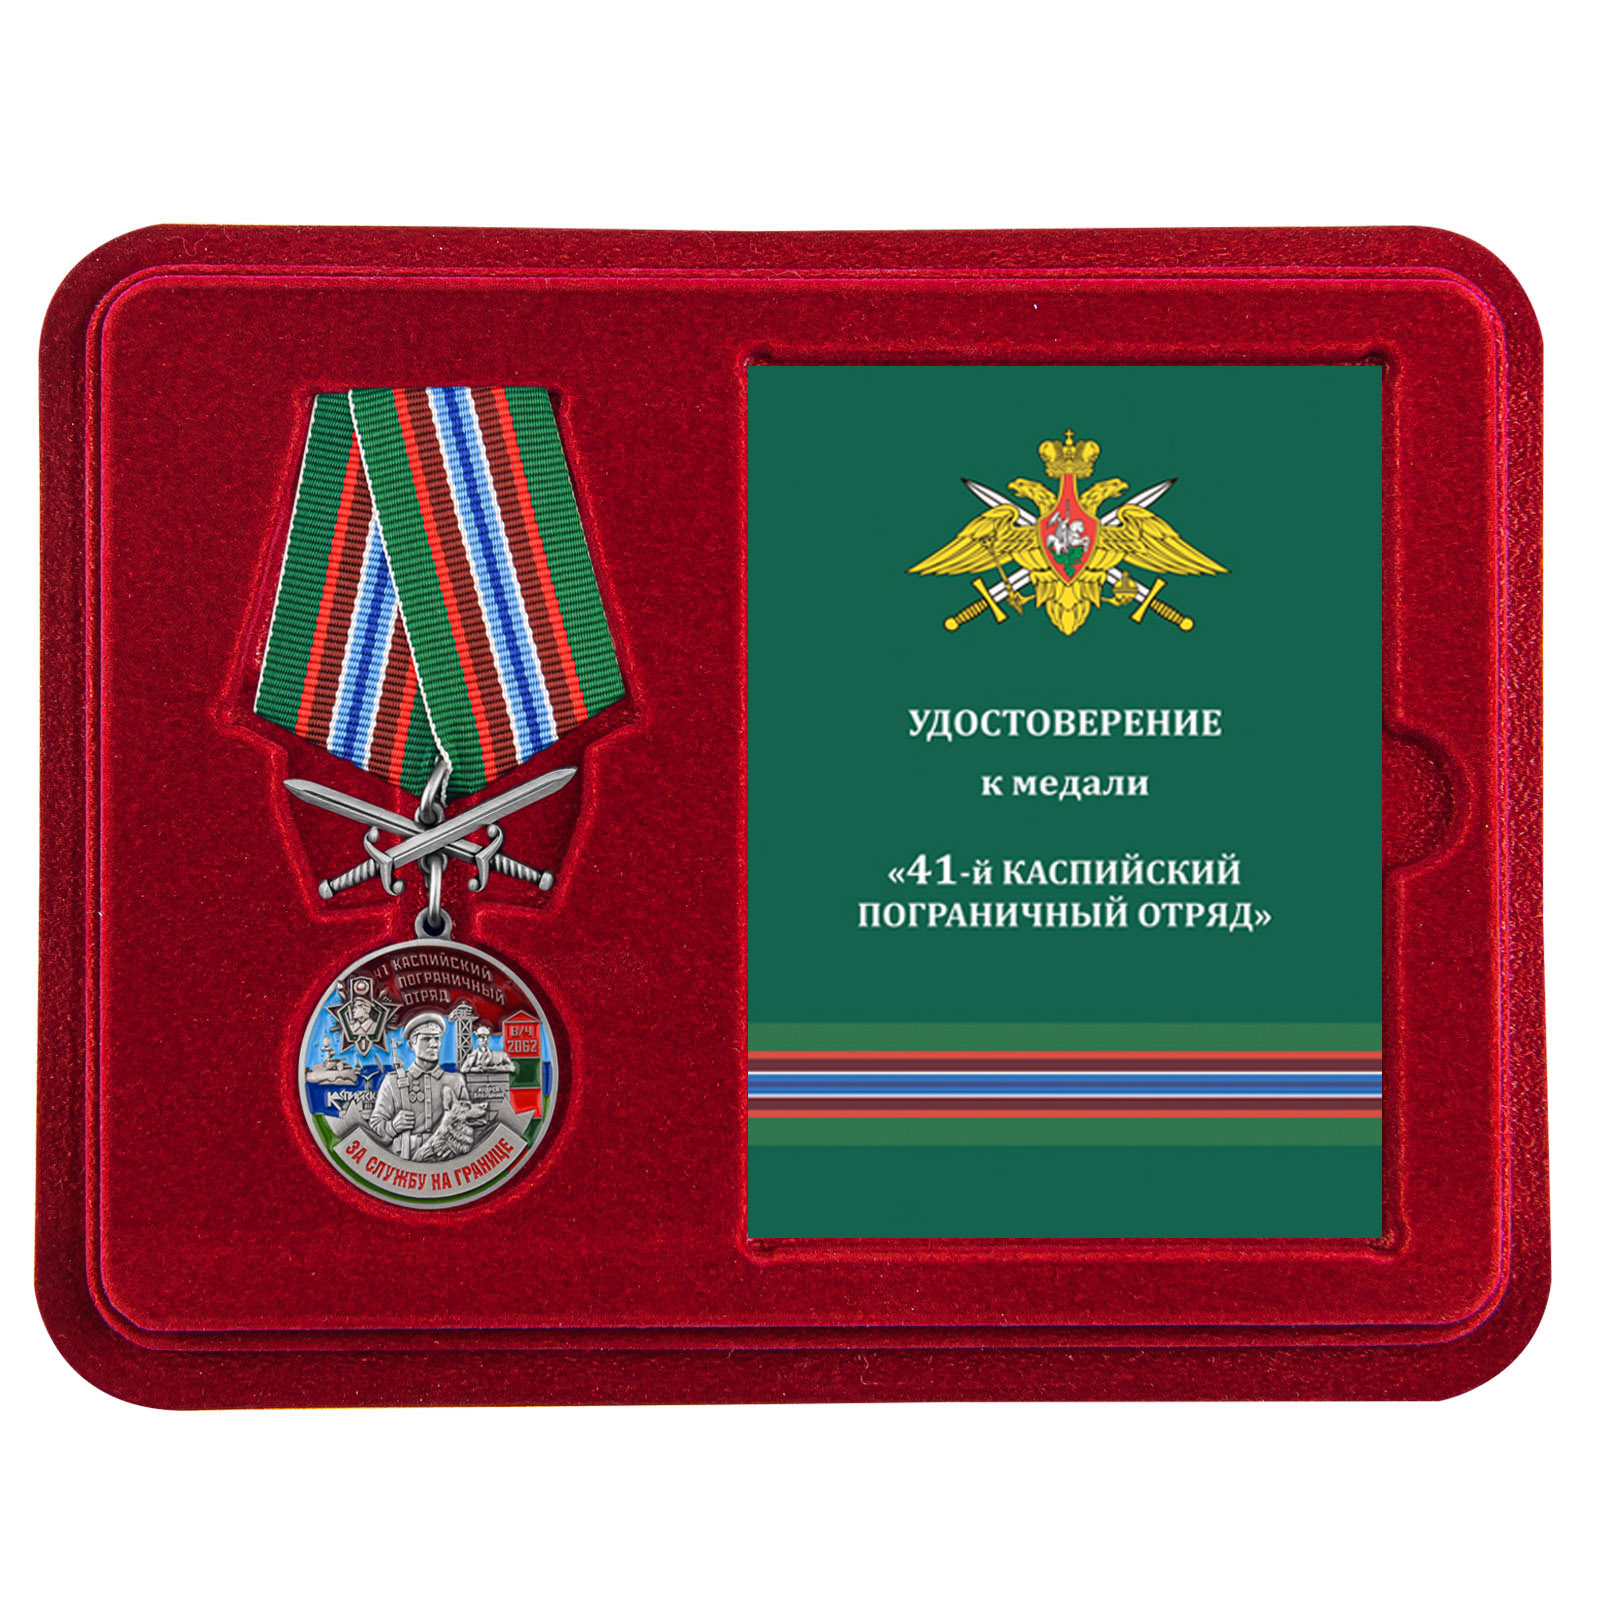 Купить медаль За службу в Каспийском пограничном отряде выгодно